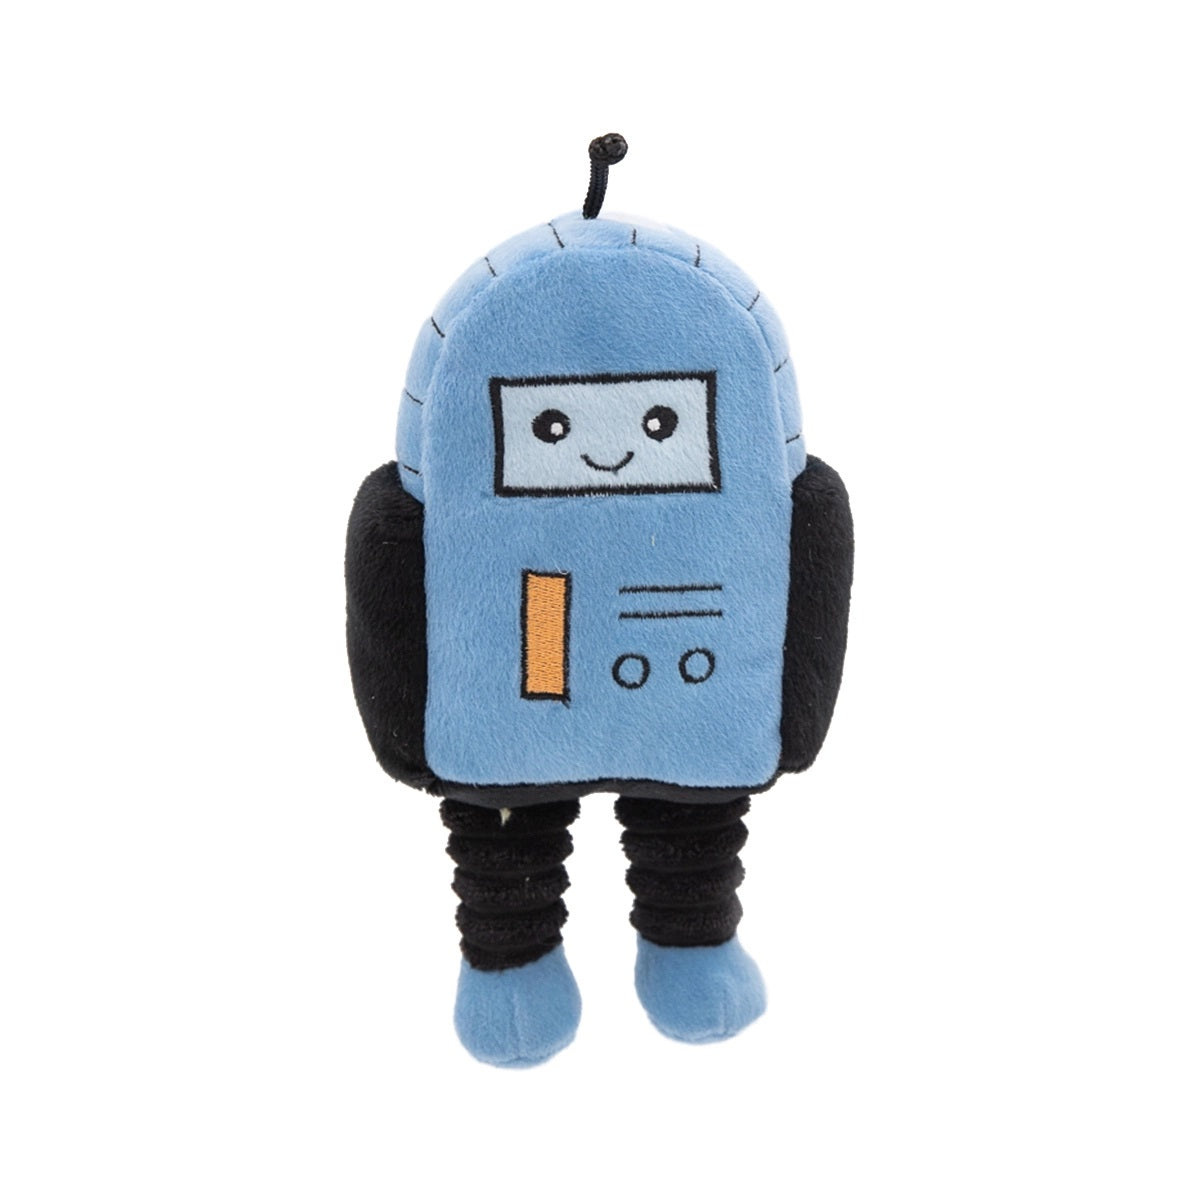 ZippyPaws  Rosco The Robot  |  Squeaky Plush Toy